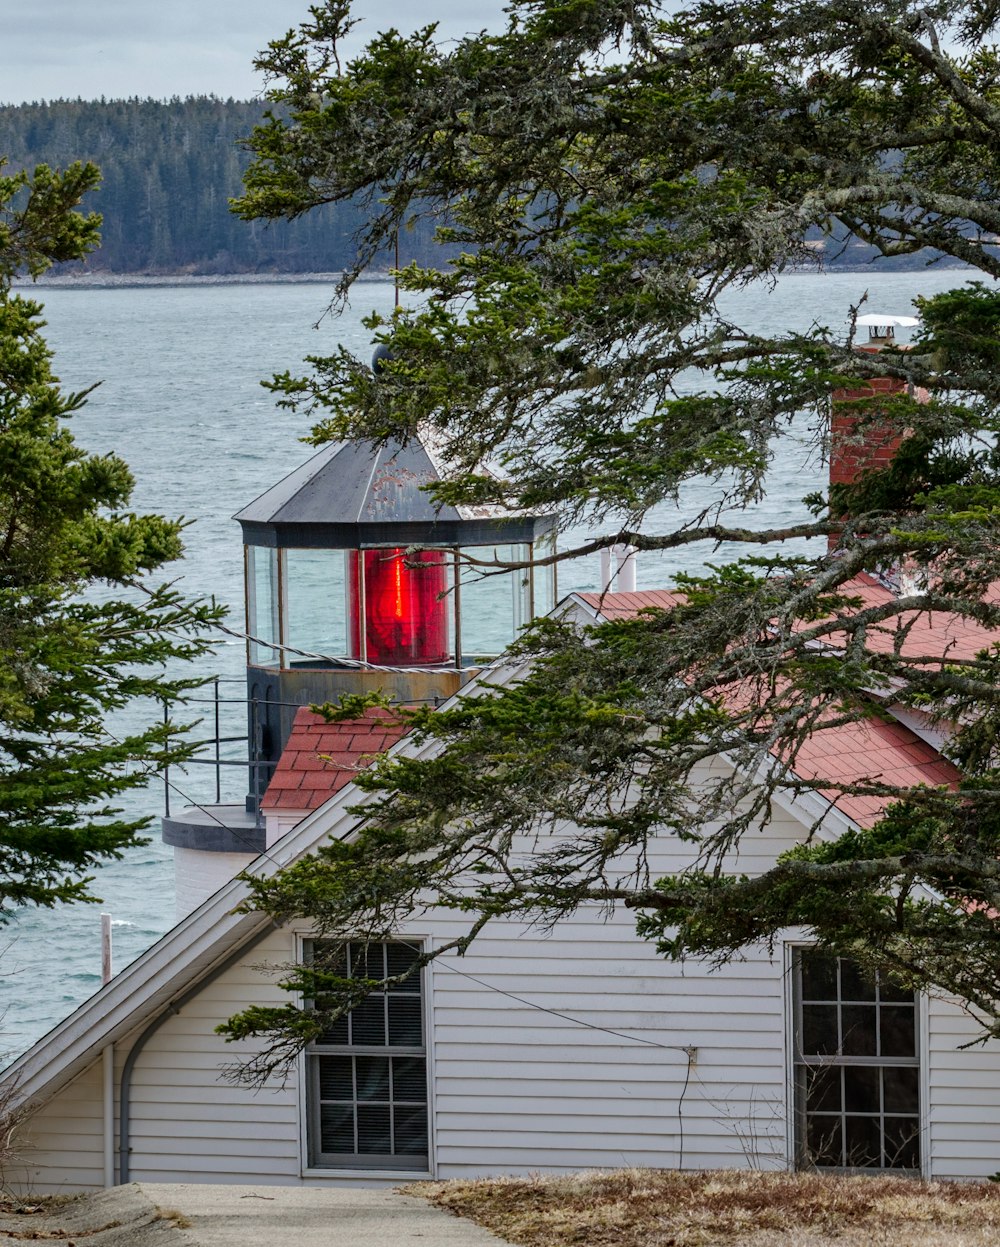 Casa de madera roja y blanca cerca del cuerpo de agua